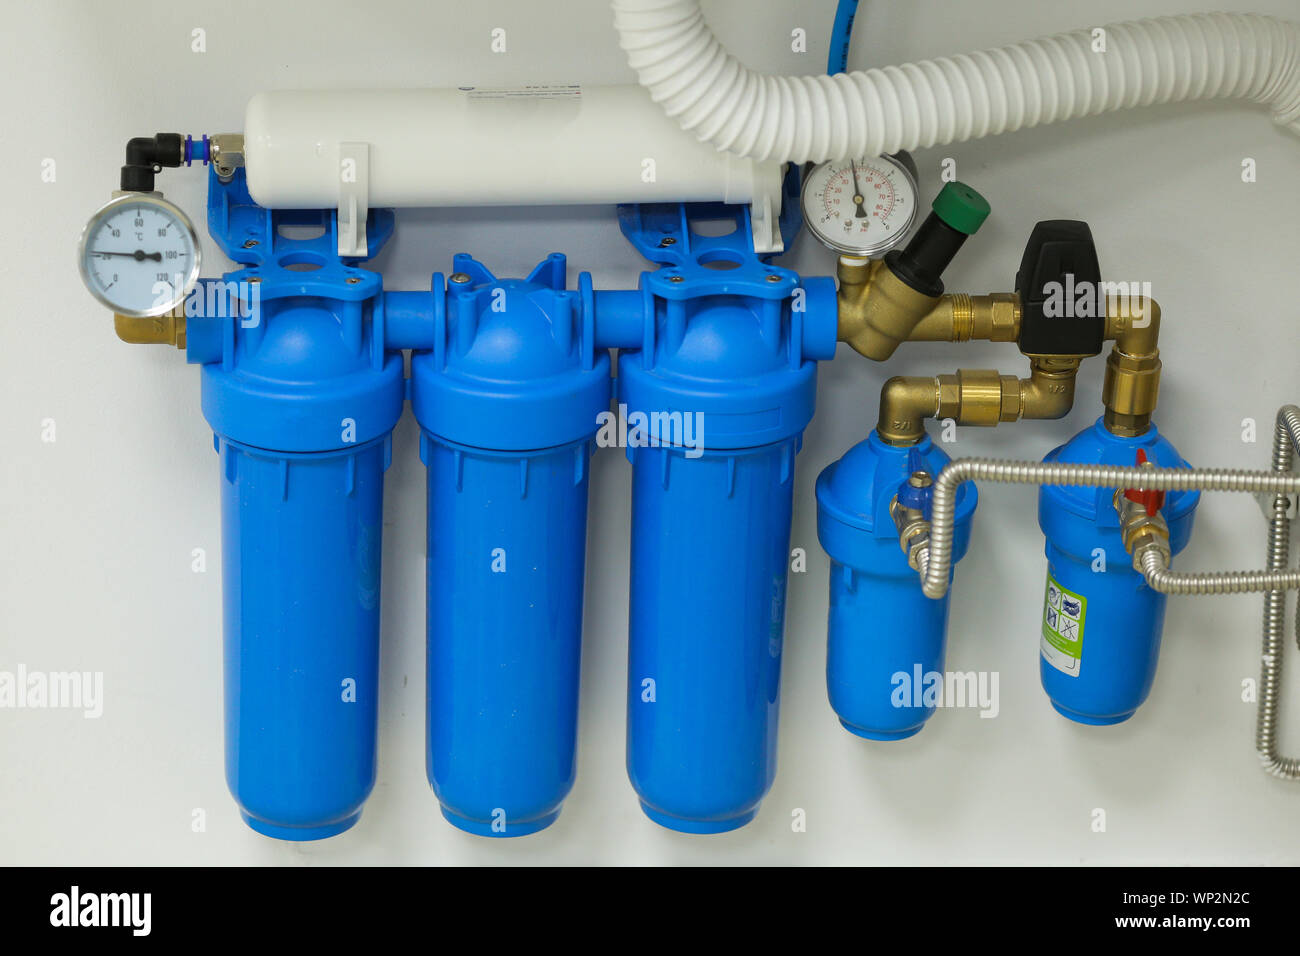 Wasseraufbereitung Filter mit Aktivkohle und ein Glas frisches und sauberes  Trinkwasser Stockfotografie - Alamy